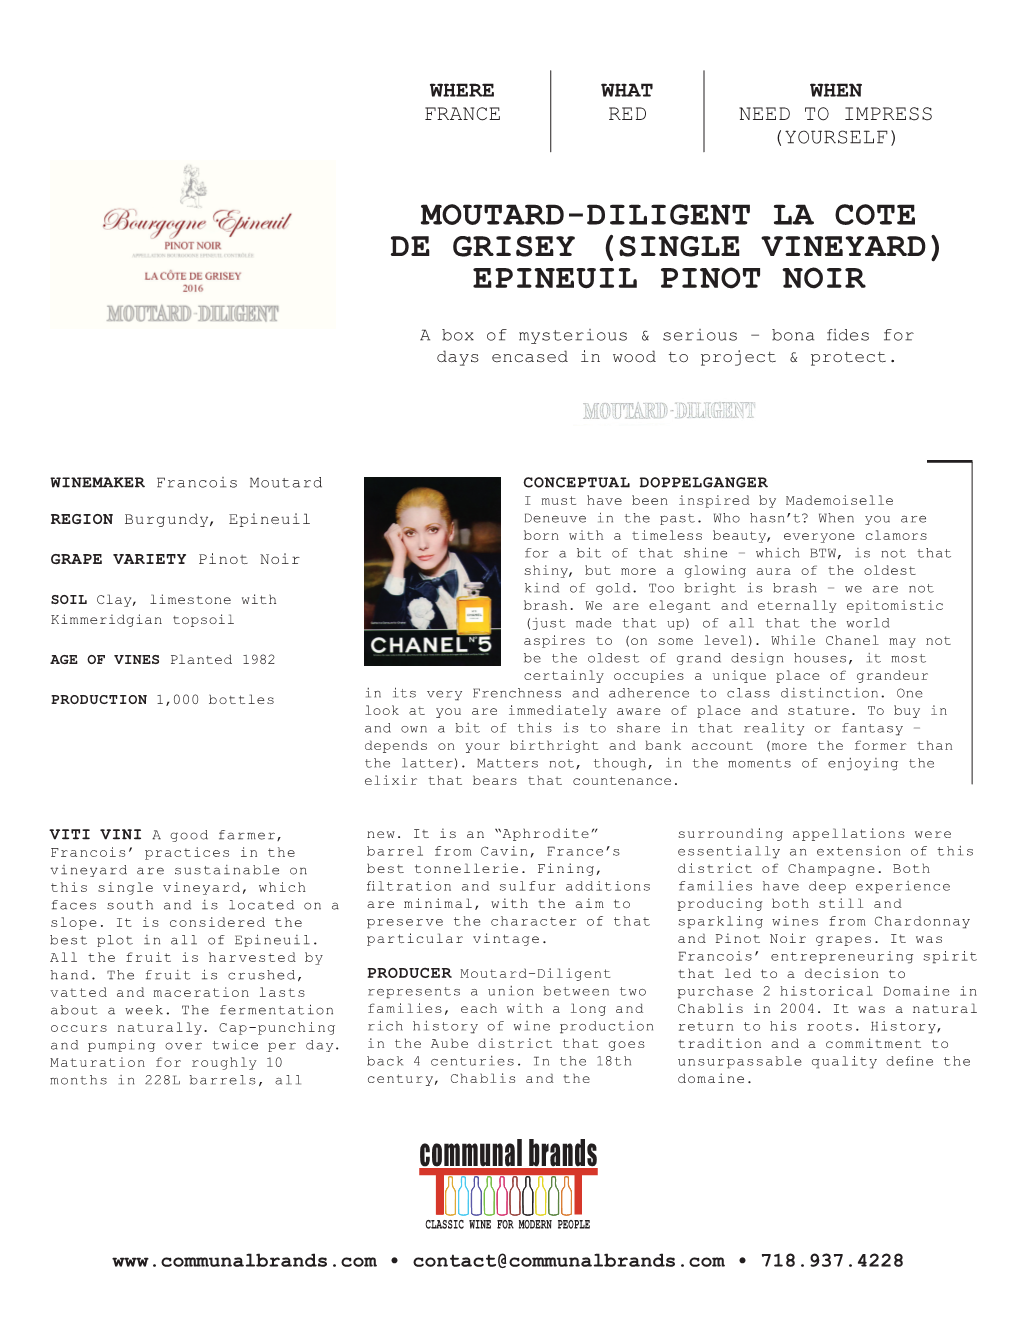 Moutard-Diligent La Cote De Grisey (SINGLE VINEYARD) Epineuil Pinot Noir